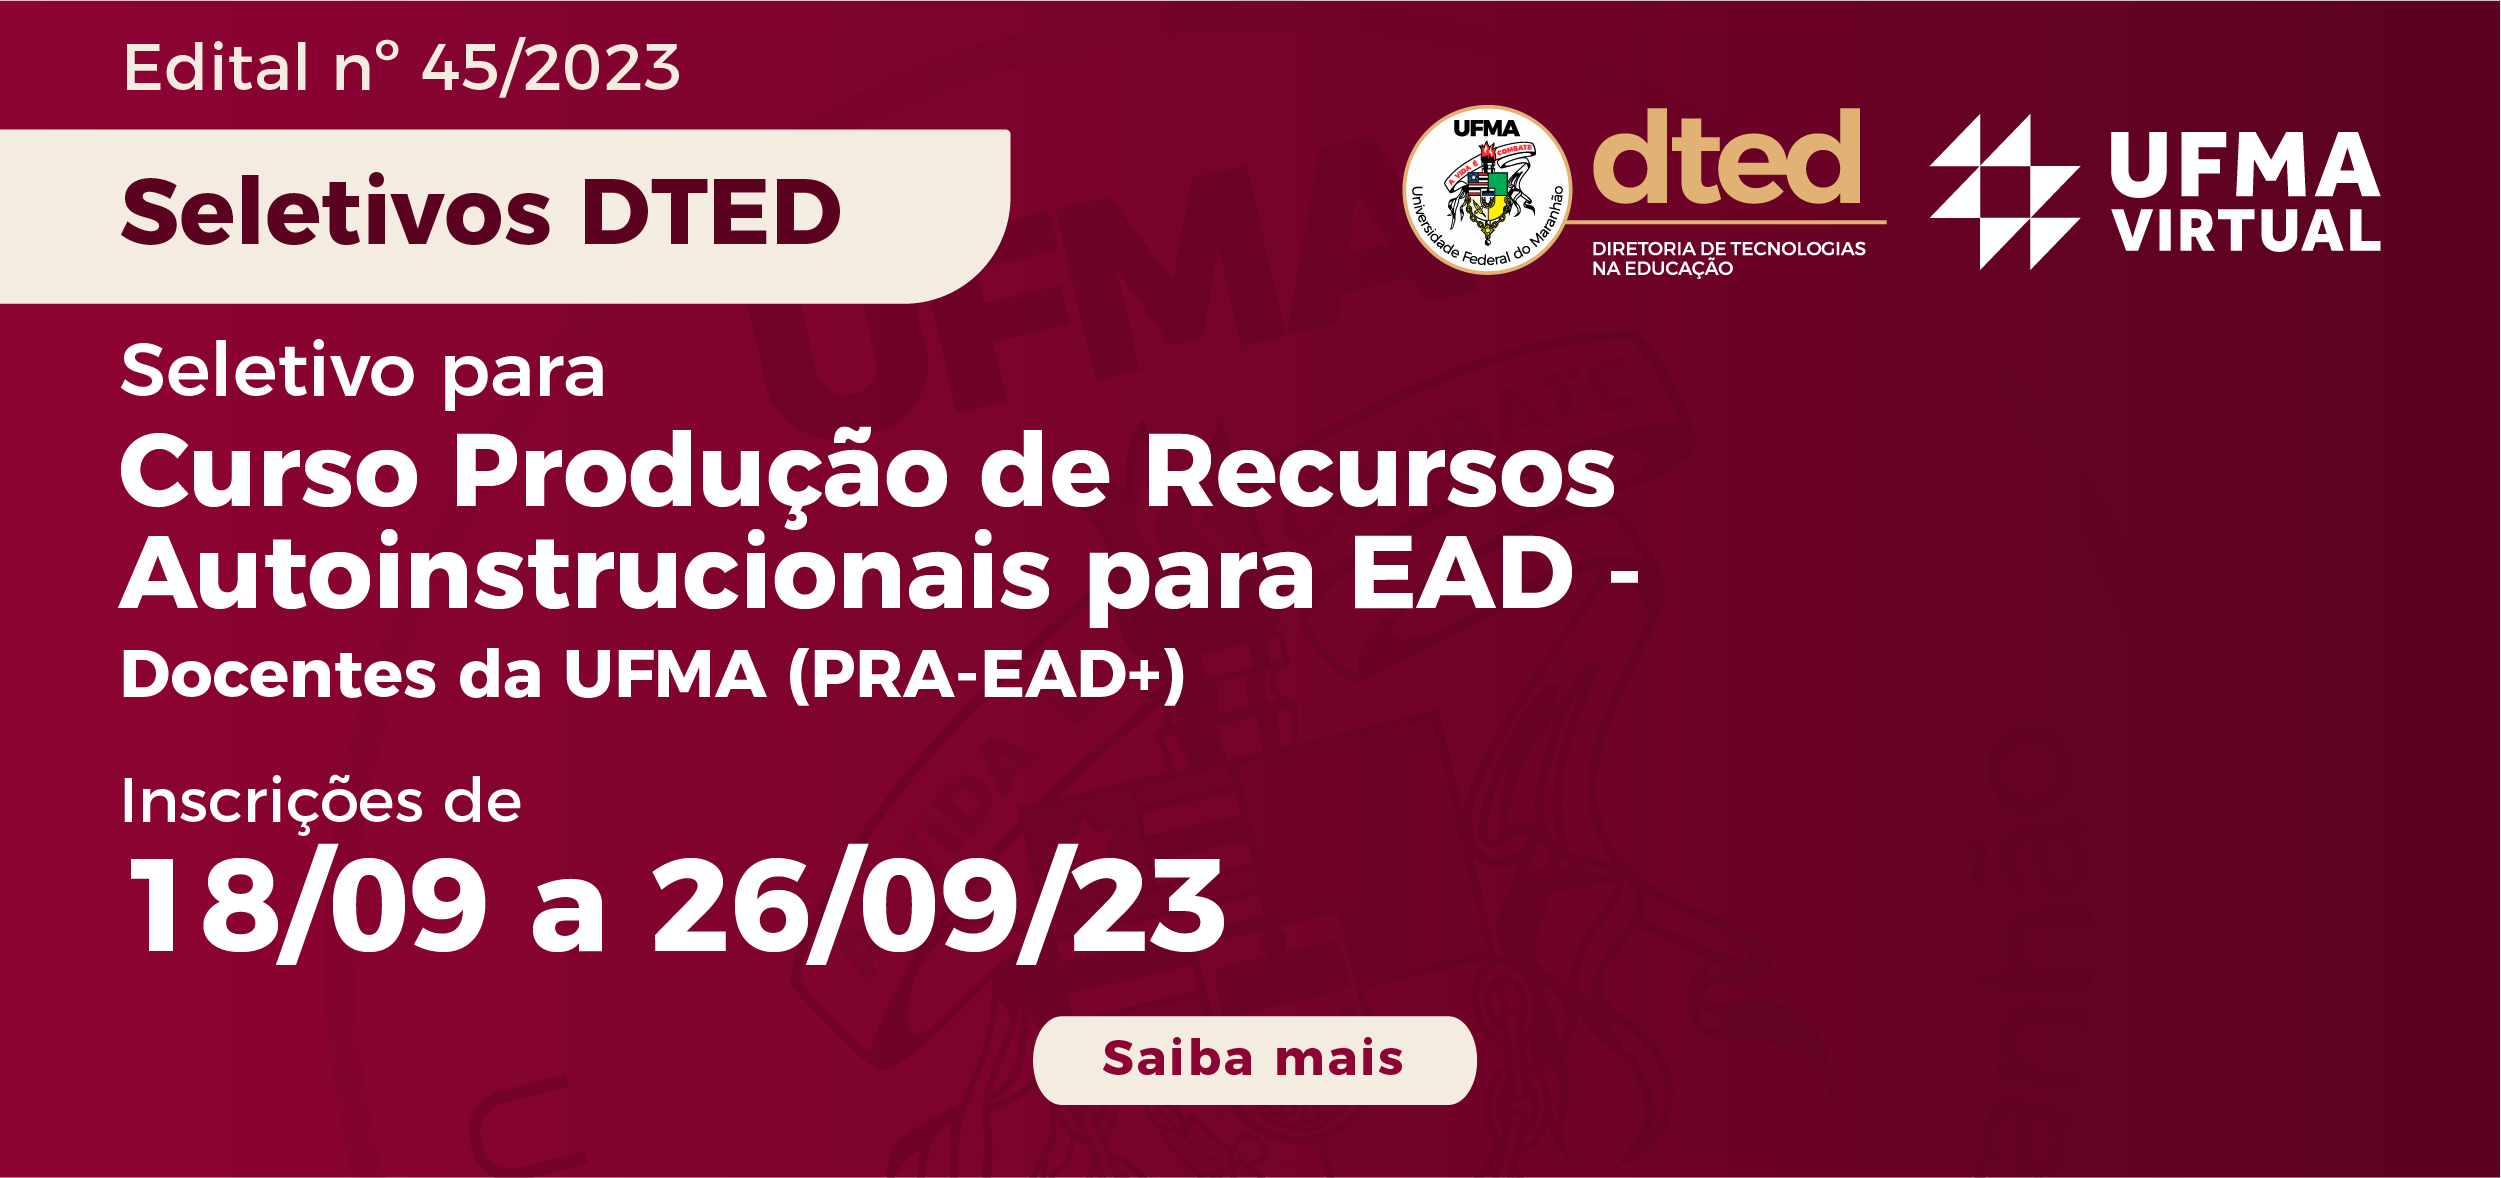 UFMA Virtual lança edital docurso "Produção de Recursos Autoinstrucionais para EAD"destinado a docentes da UFMA